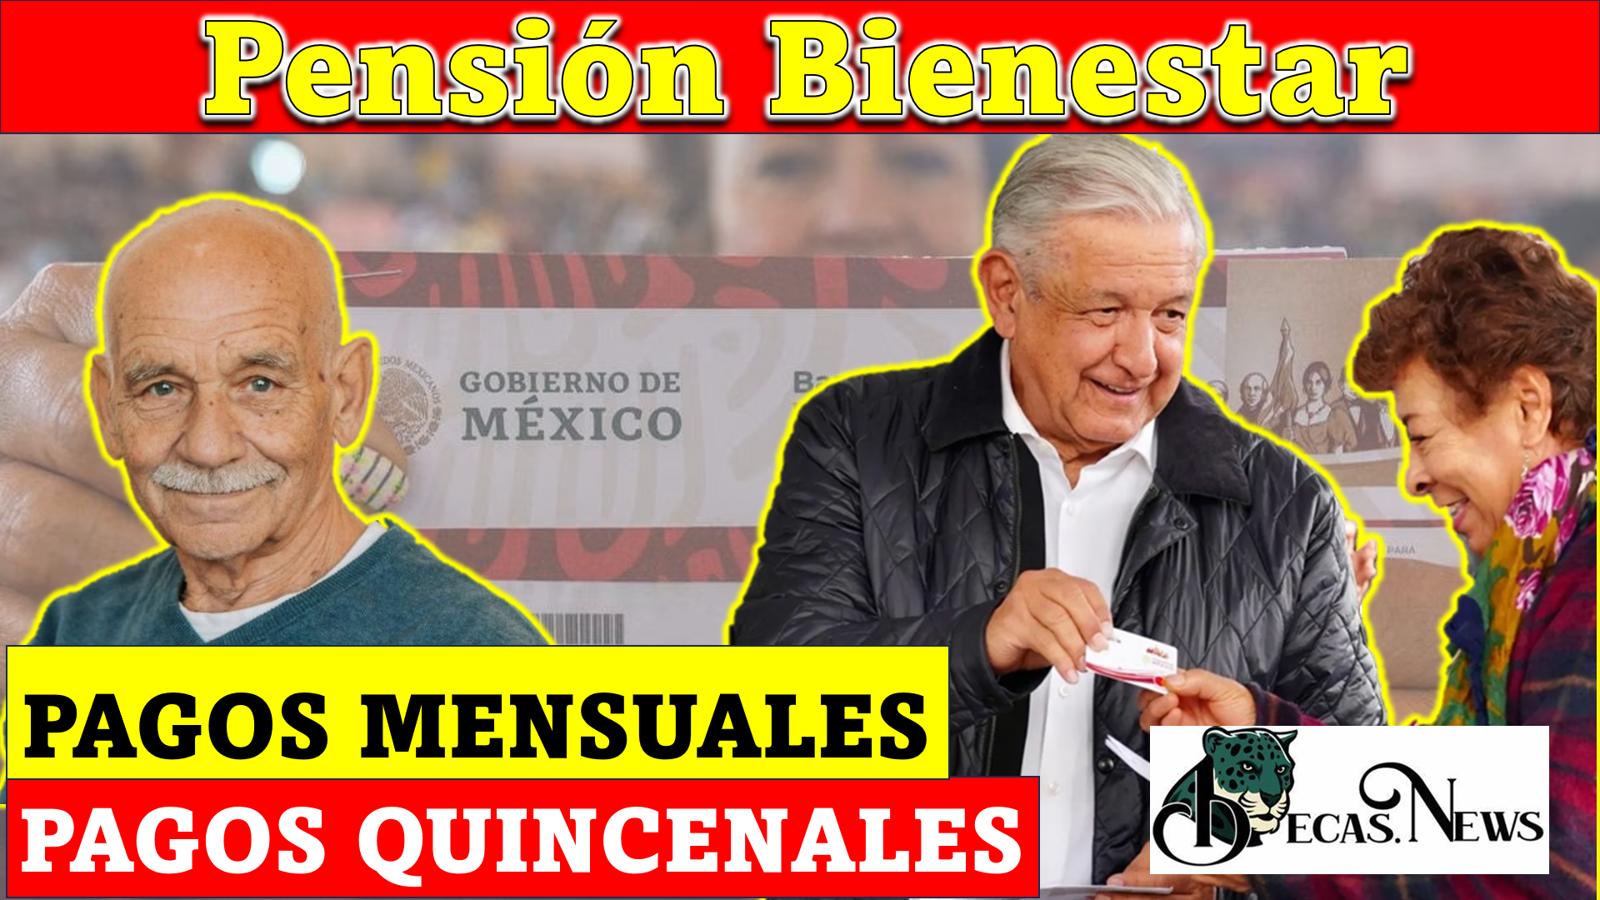 El presidente de México busca que la Pensión Bienestar se entregue de manera quincenal